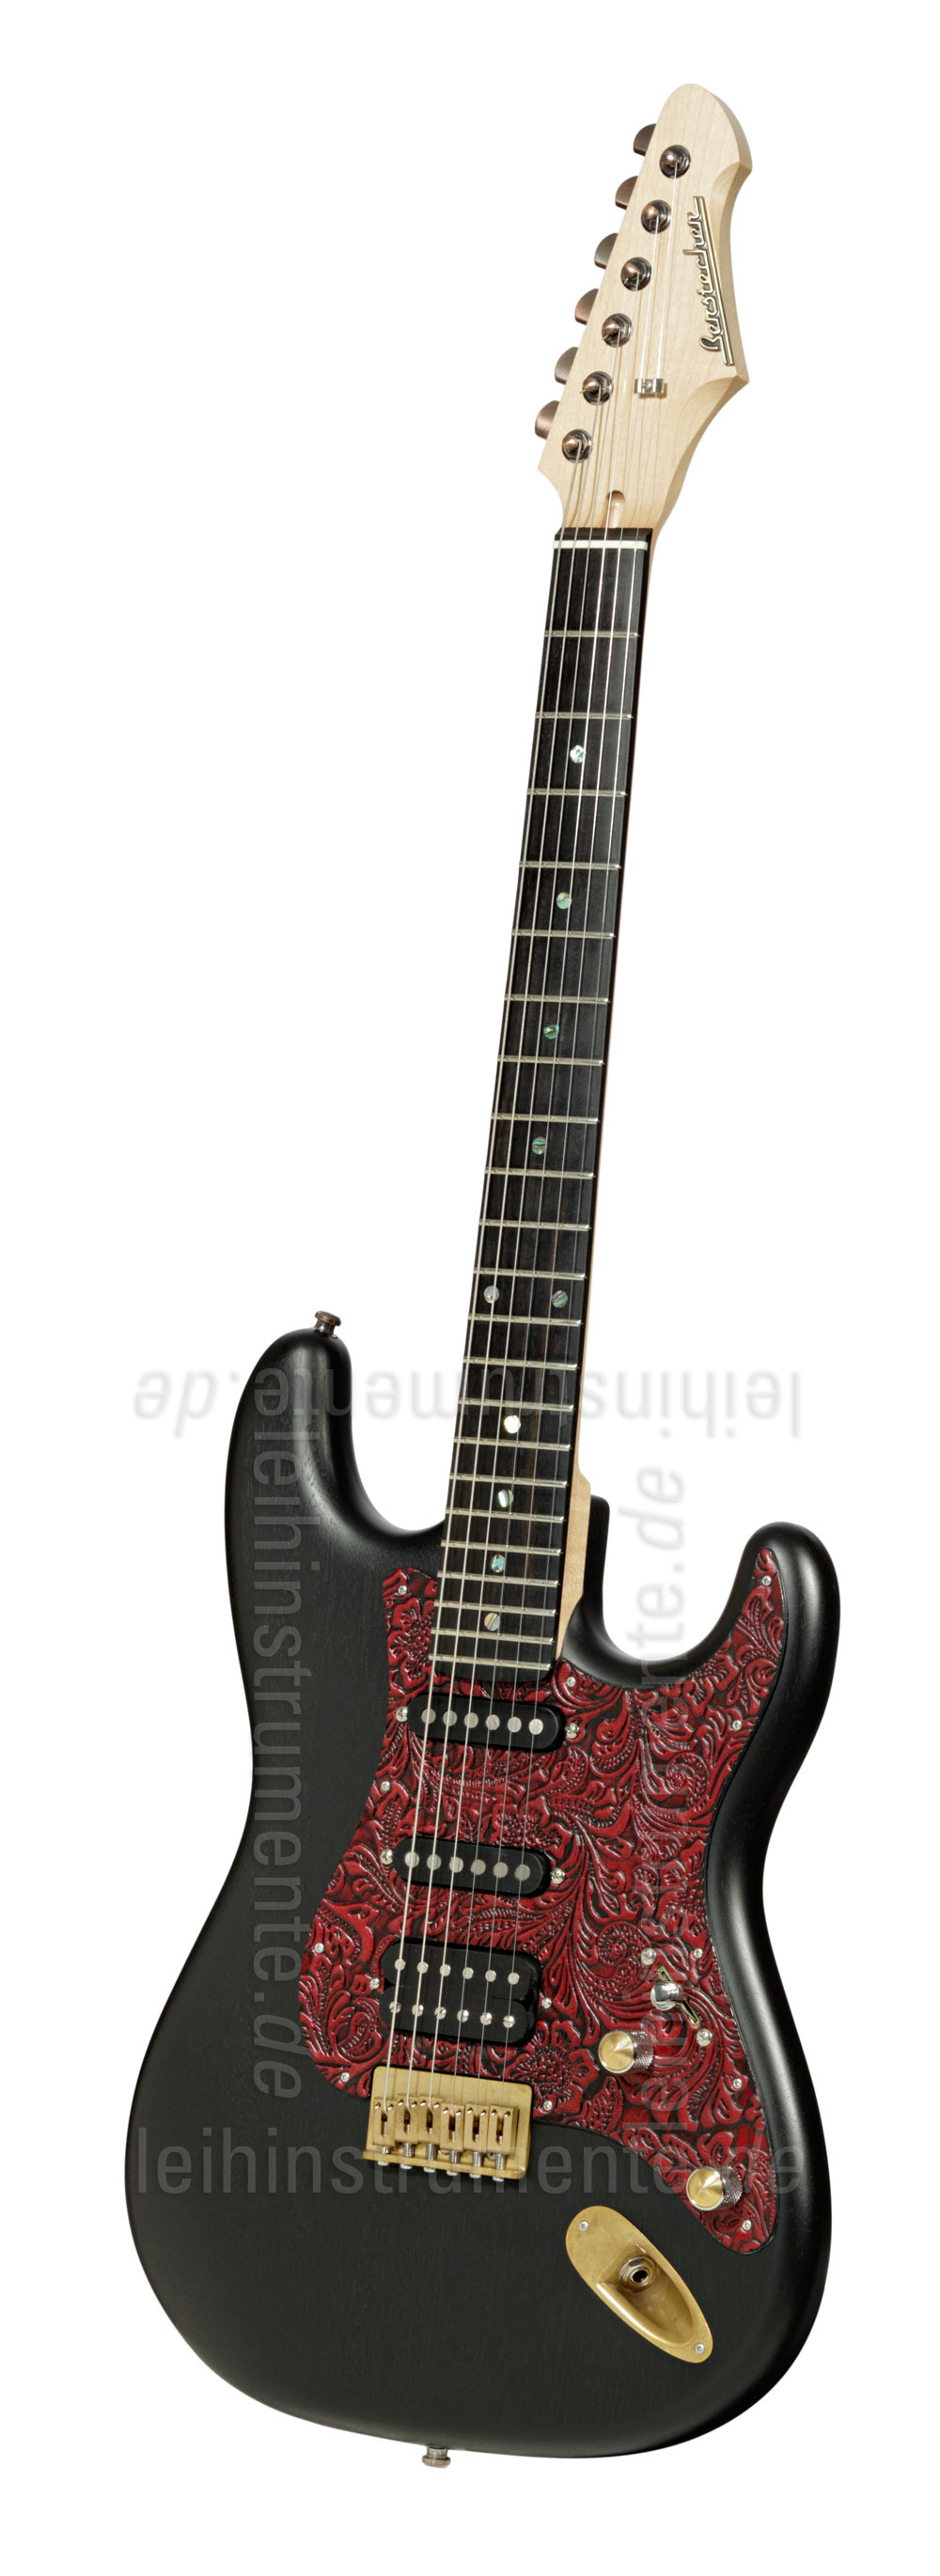 zur Artikelbeschreibung / Preis E-Gitarre BERSTECHER Deluxe Vintage - Black / Floral Red + Koffer - made in Germany